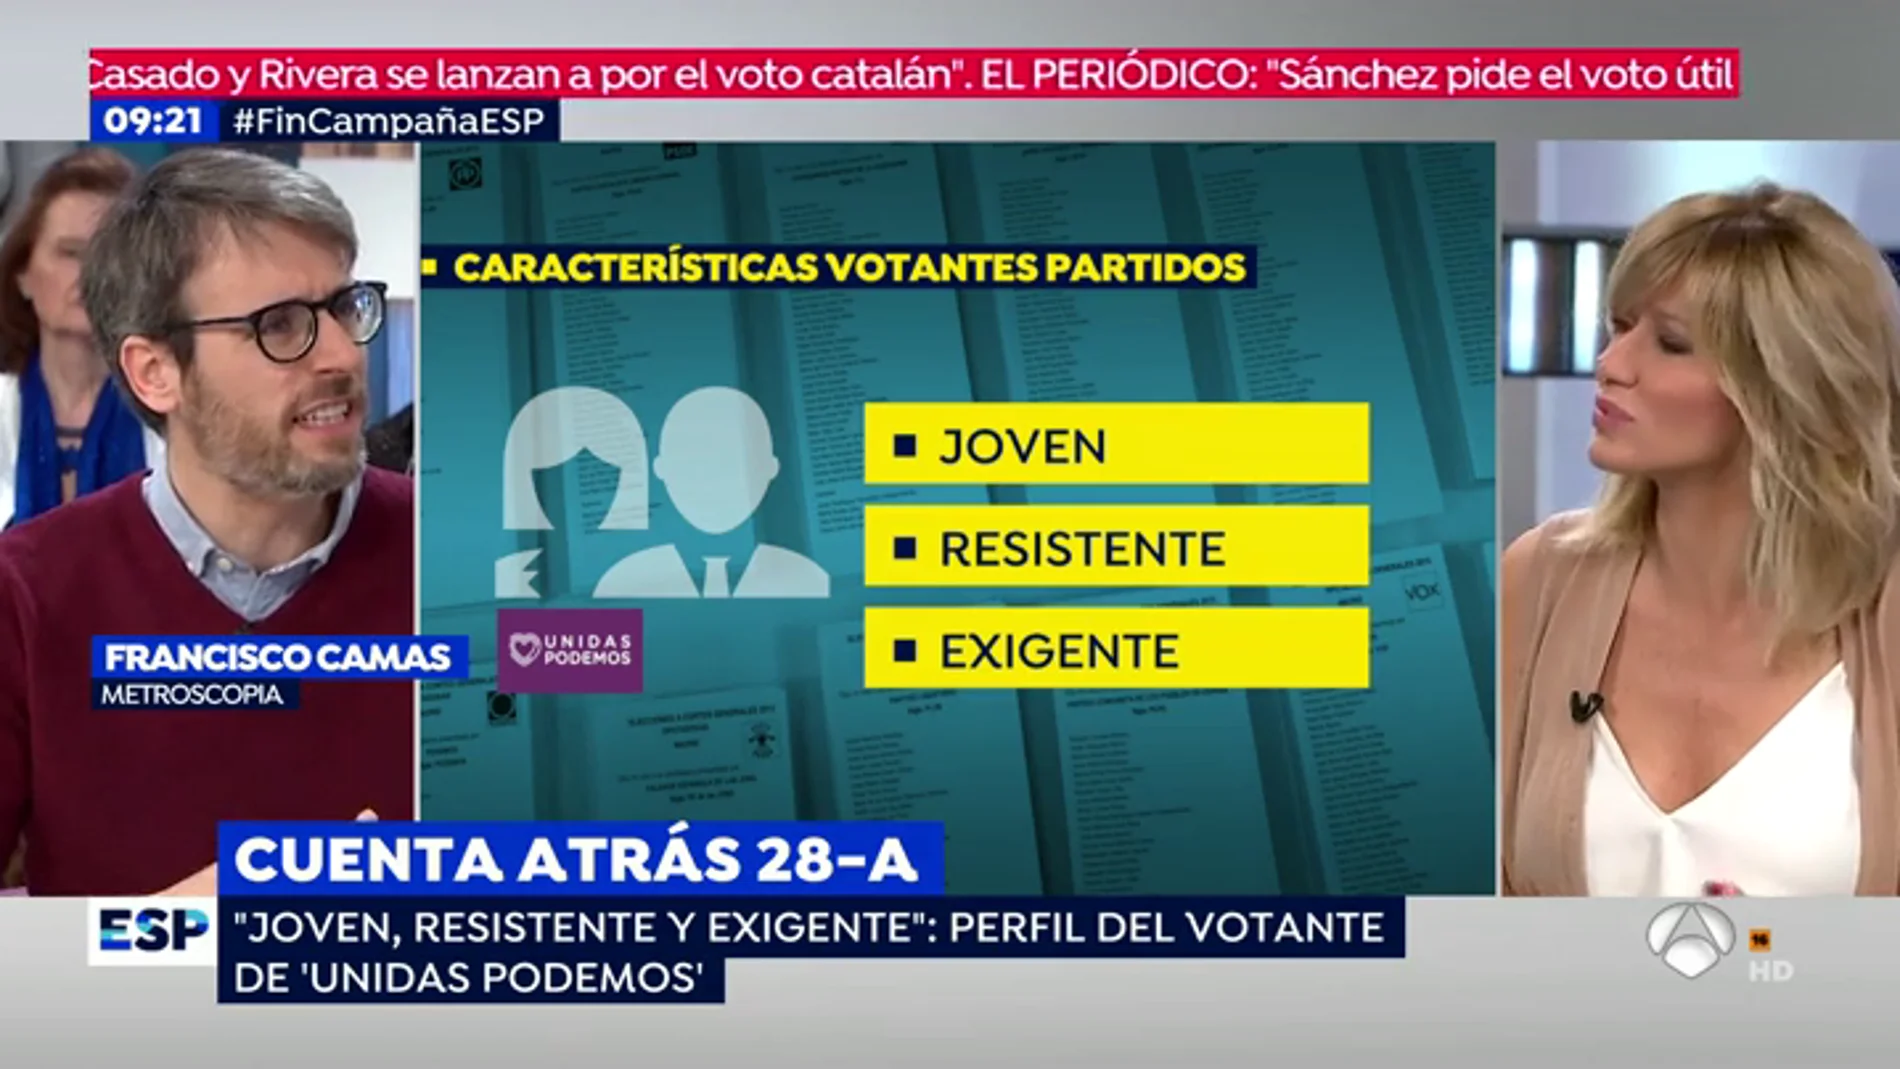 Dime cómo eres y te diré a quien votas | El perfil de los votantes de PP, Podemos, Ciudadanos, PSOE y Vox